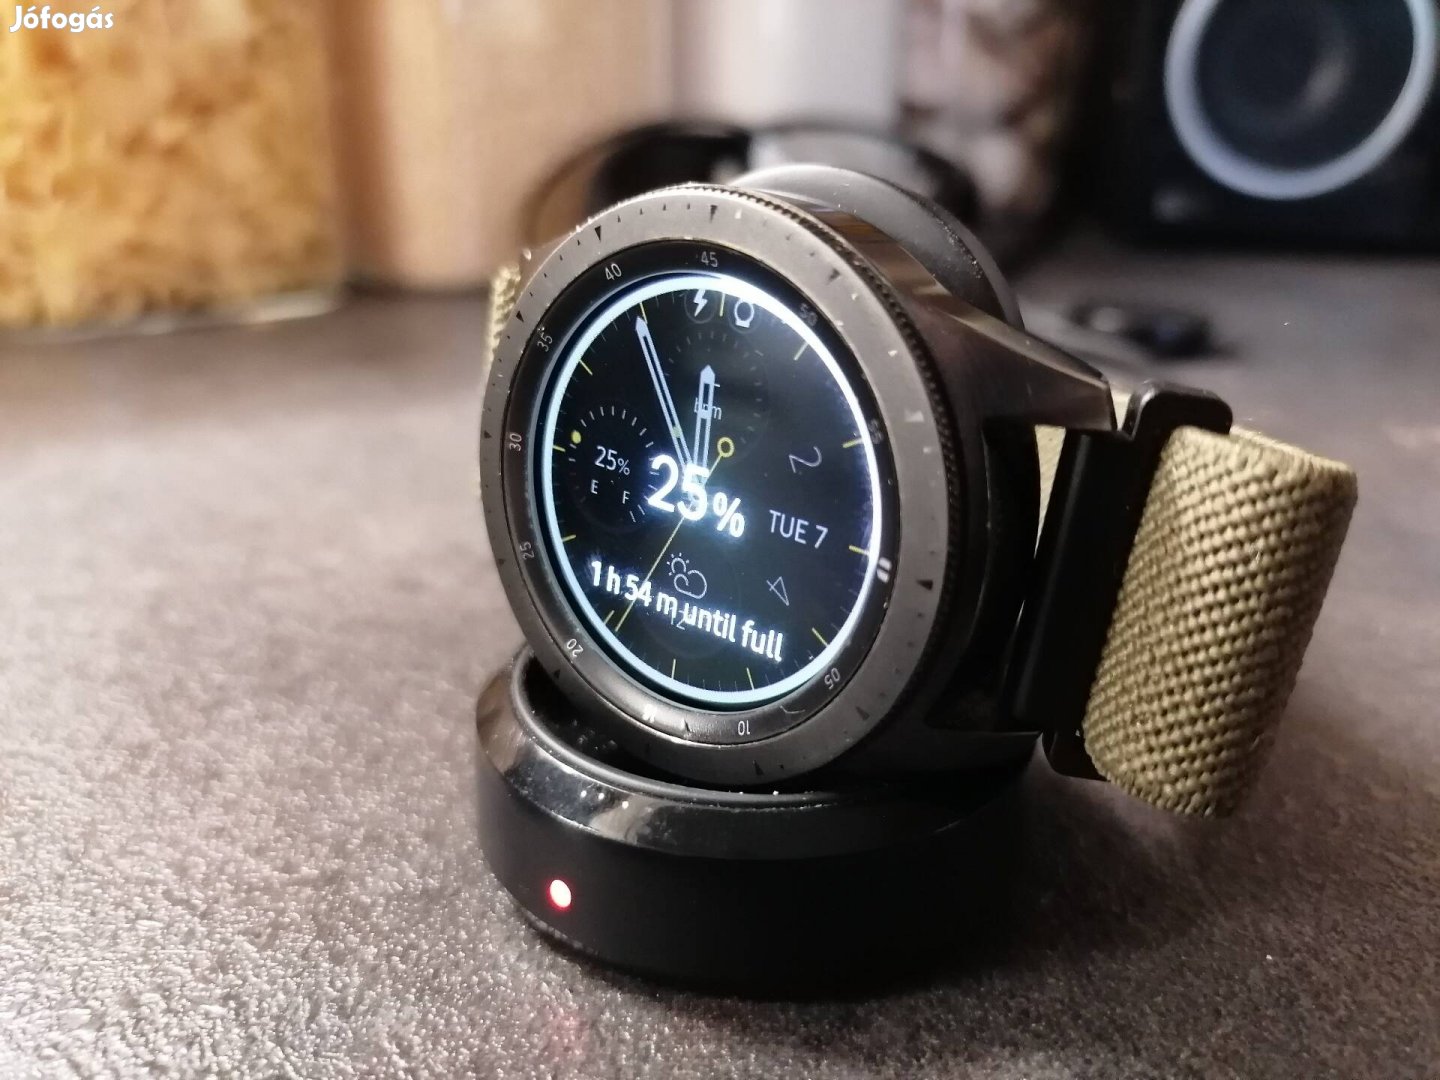 Samsung Galaxy watch 42mm okosóra